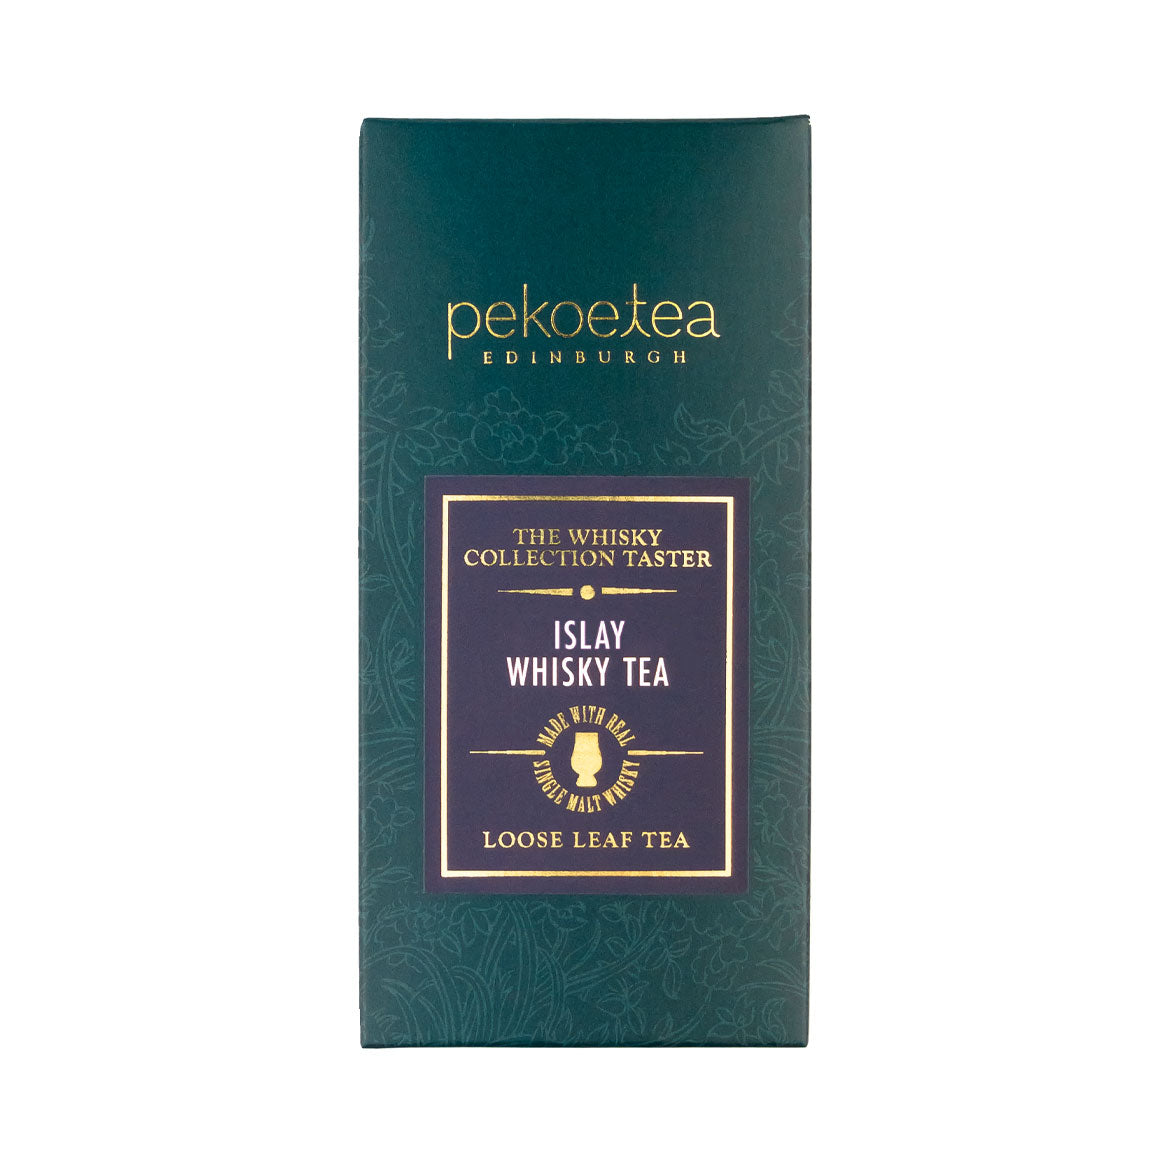 PekoeTea Edinburgh Whisky Tea Collection Islay Loose Leaf Taster Box